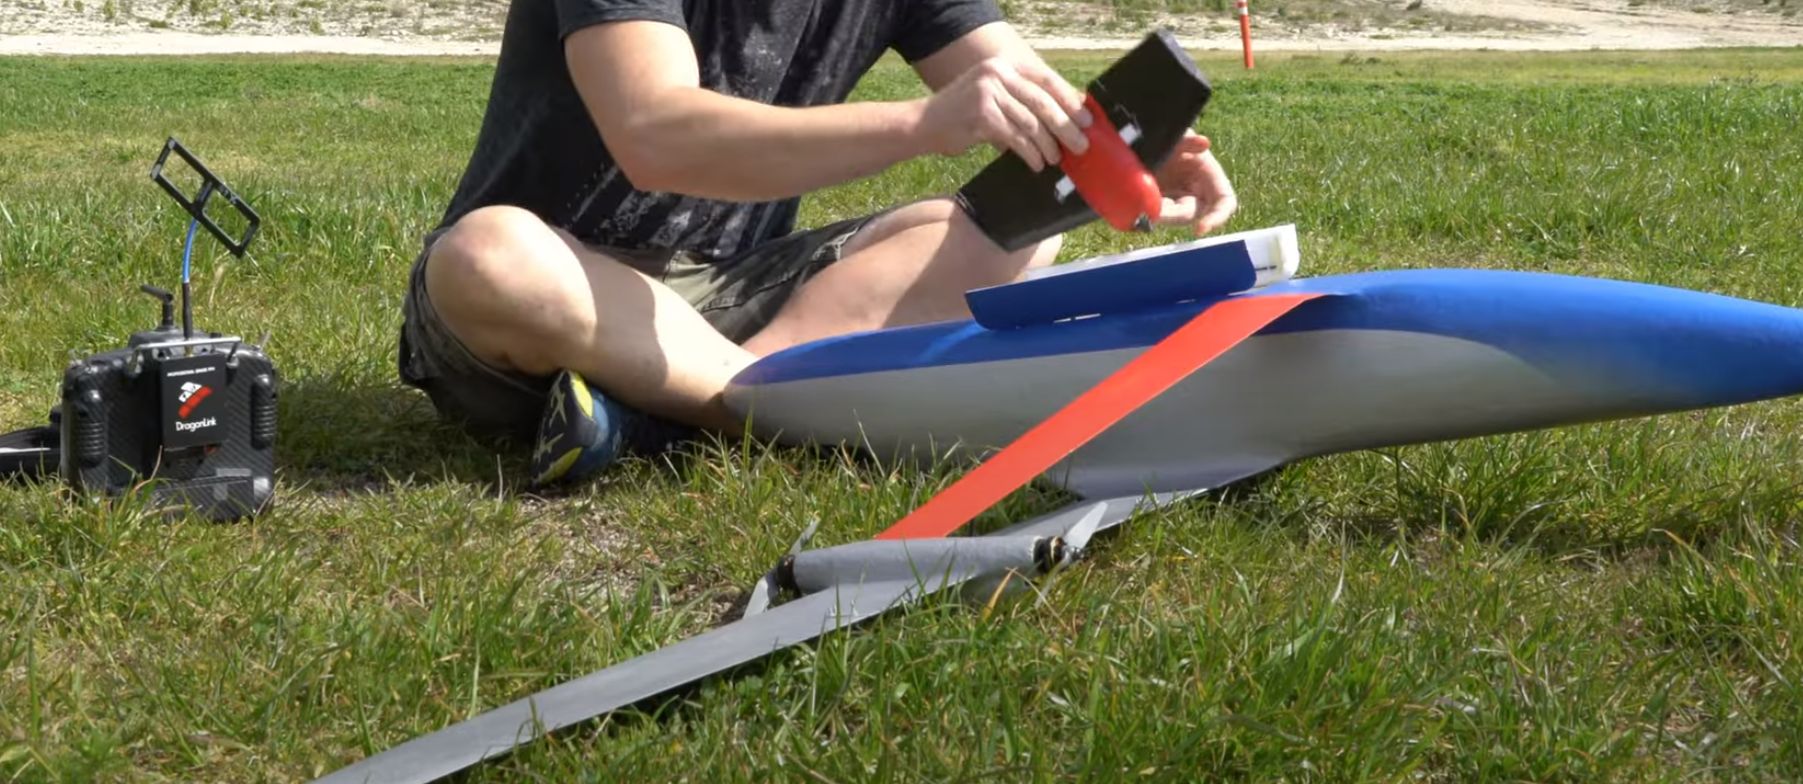 Building a model aircraft with a gear strut: sense or nonsense?